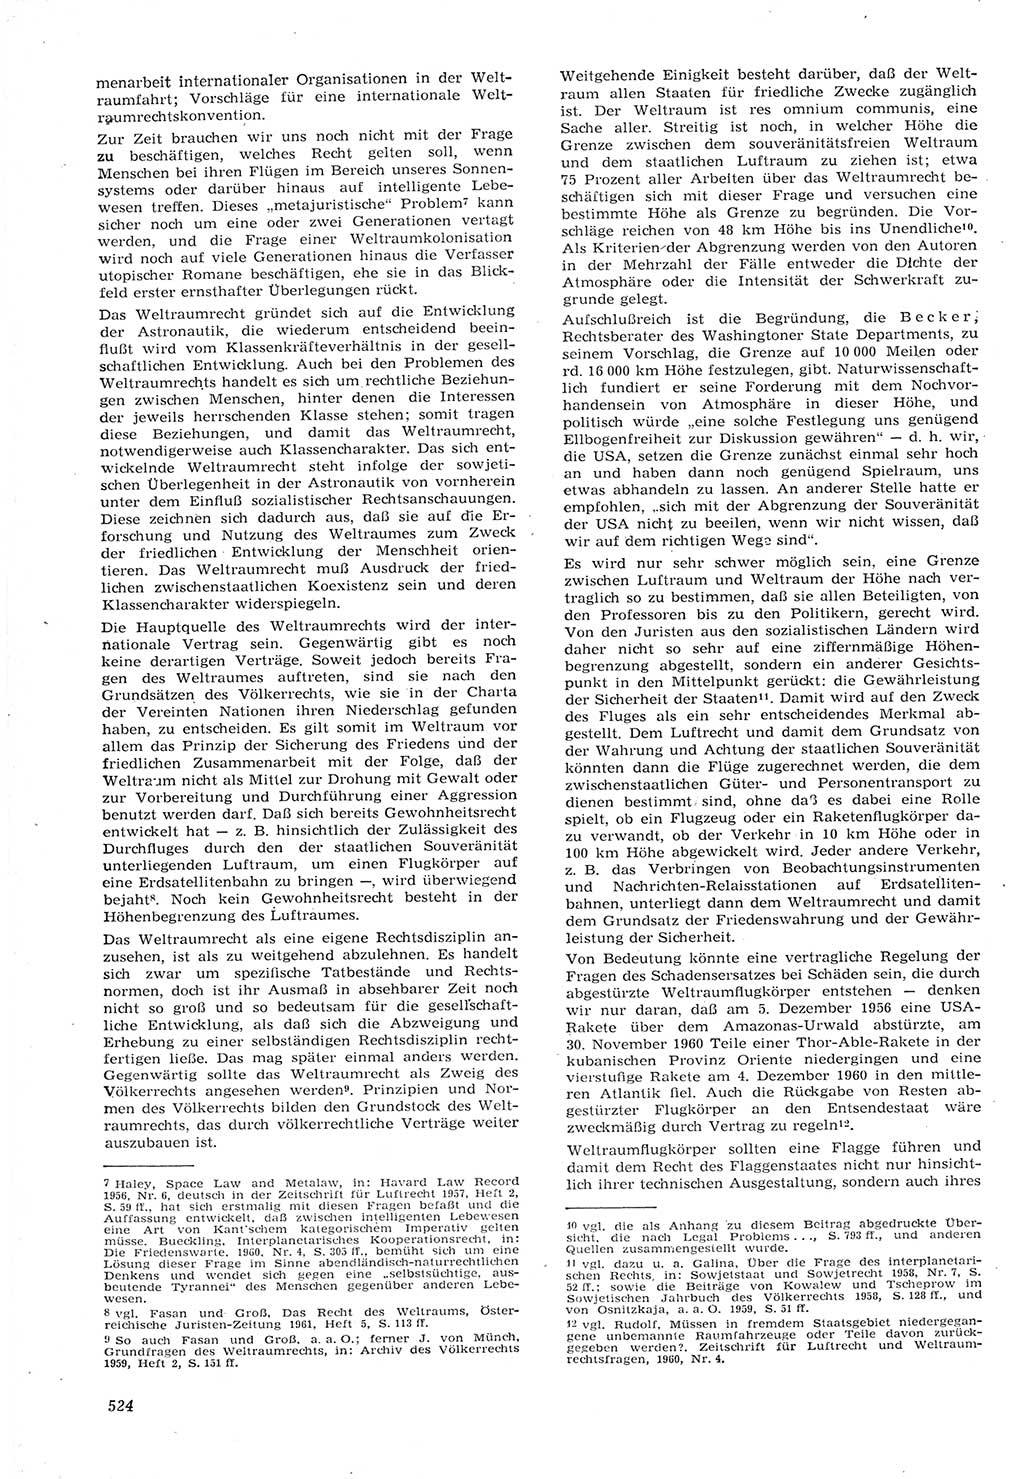 Neue Justiz (NJ), Zeitschrift für Recht und Rechtswissenschaft [Deutsche Demokratische Republik (DDR)], 15. Jahrgang 1961, Seite 524 (NJ DDR 1961, S. 524)